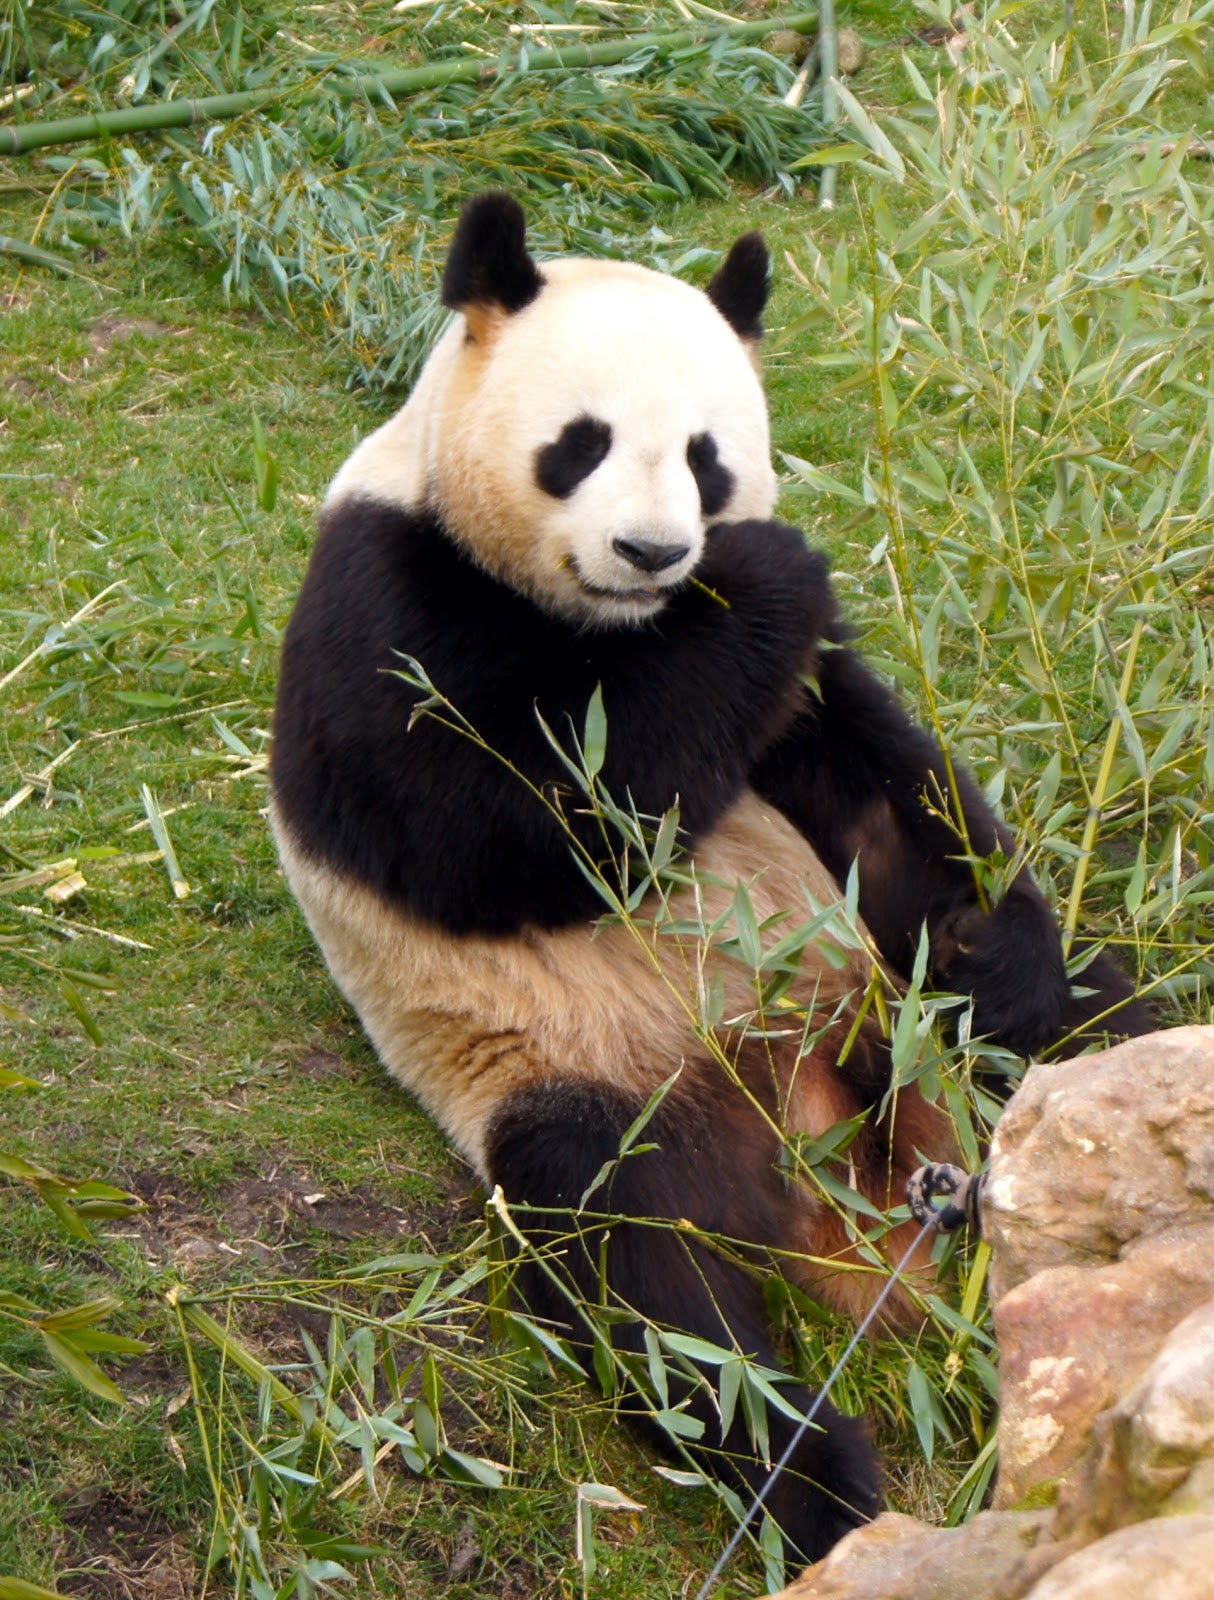 Porte-clés panda géant - pandas - cadeau panda - cadeaux panda - pandas  géants W